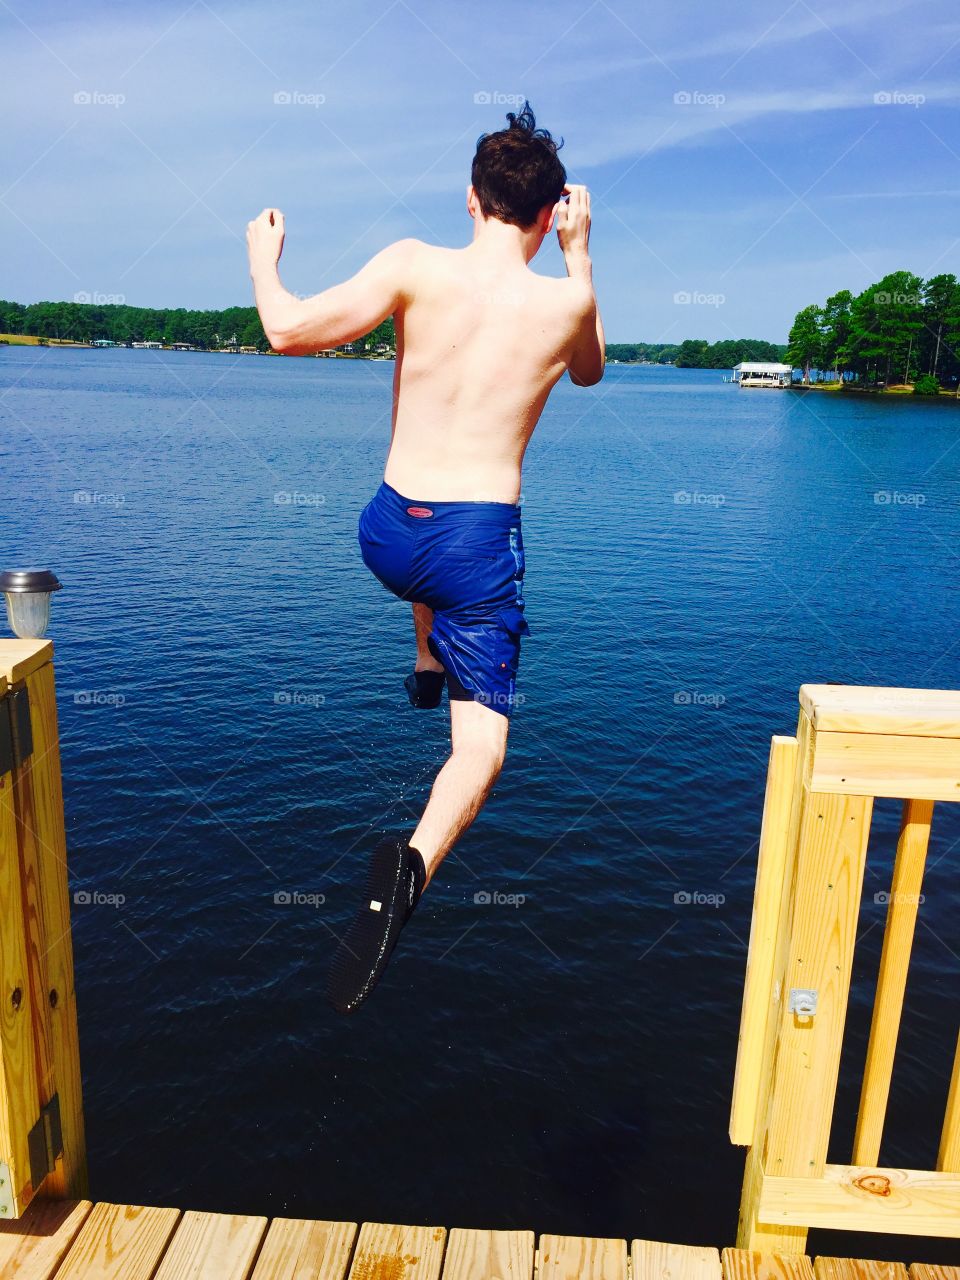 Lake jump fun